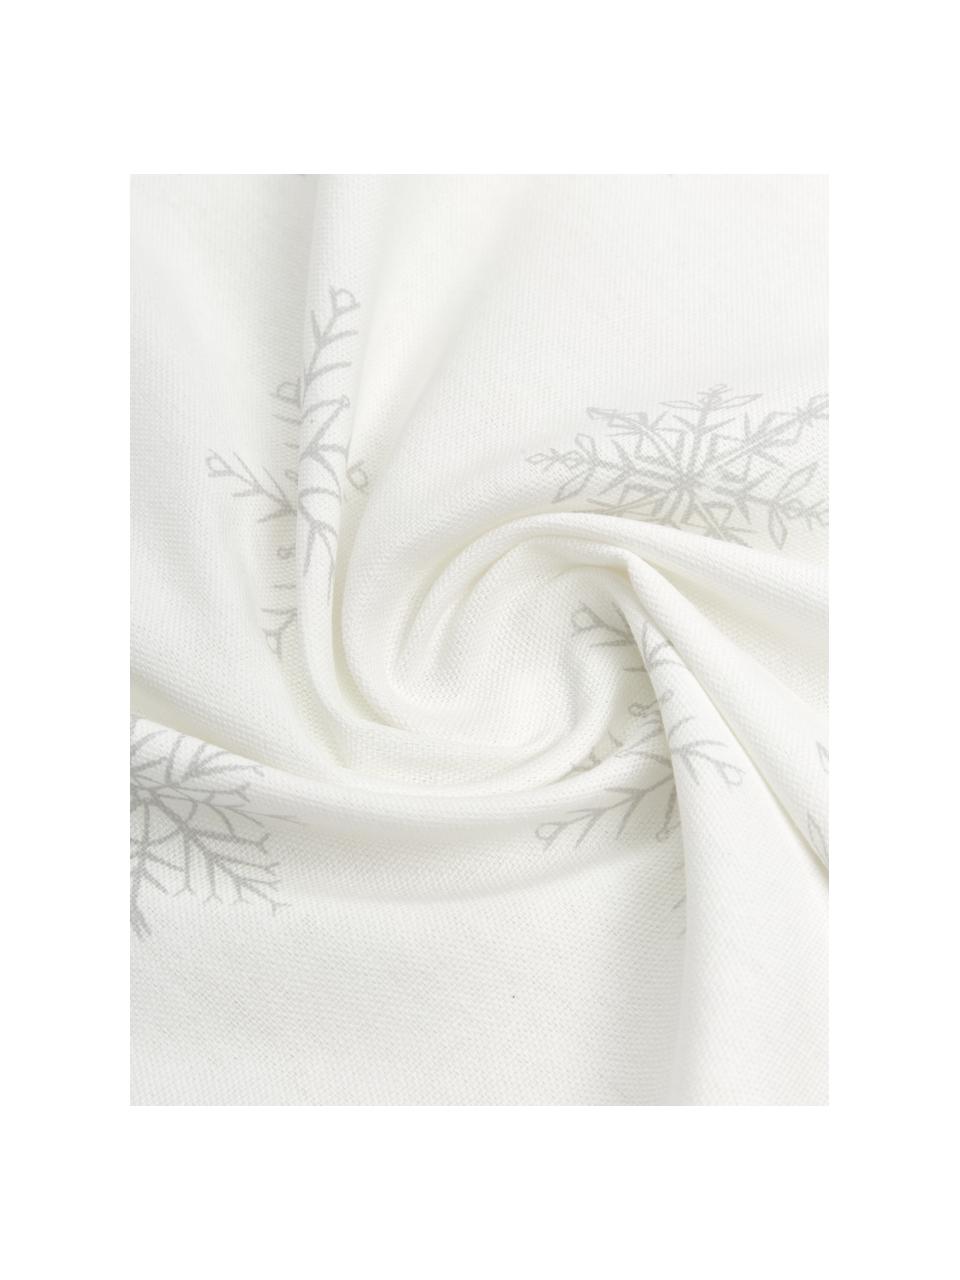 Mantel Snow, 100% algodón de cultivos sostenible de algodón, Blanco, crema, An 145 x L 200 cm